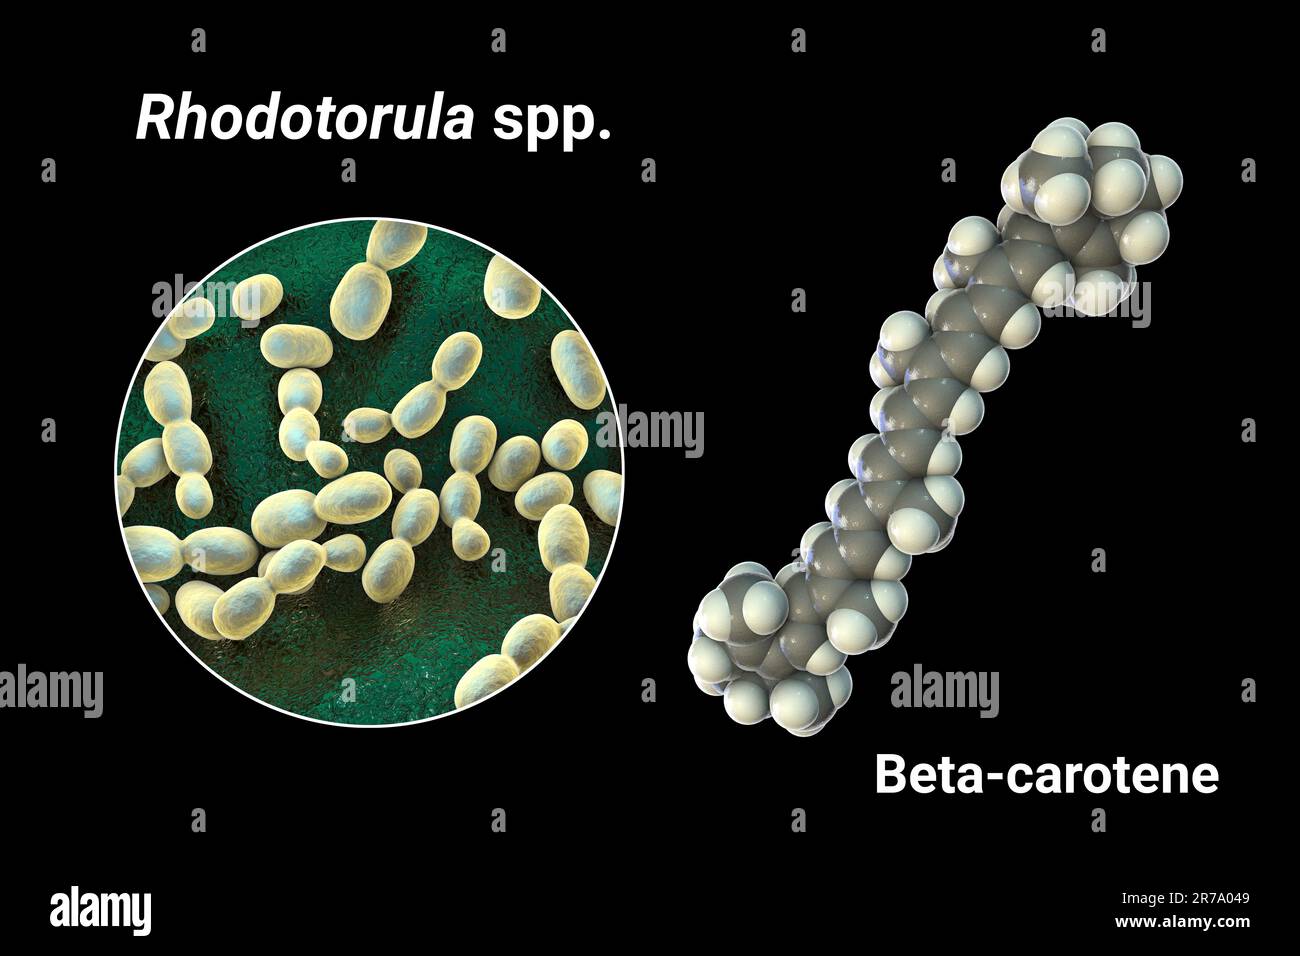 Rhodotorula fungi und Molekül des beta-Carotin, 3D. Abbildung. Rhodotorula-Hefen sind eine natürliche Quelle für Beta-Carotin-Pigment, Vorläufer von Vitam Stockfoto